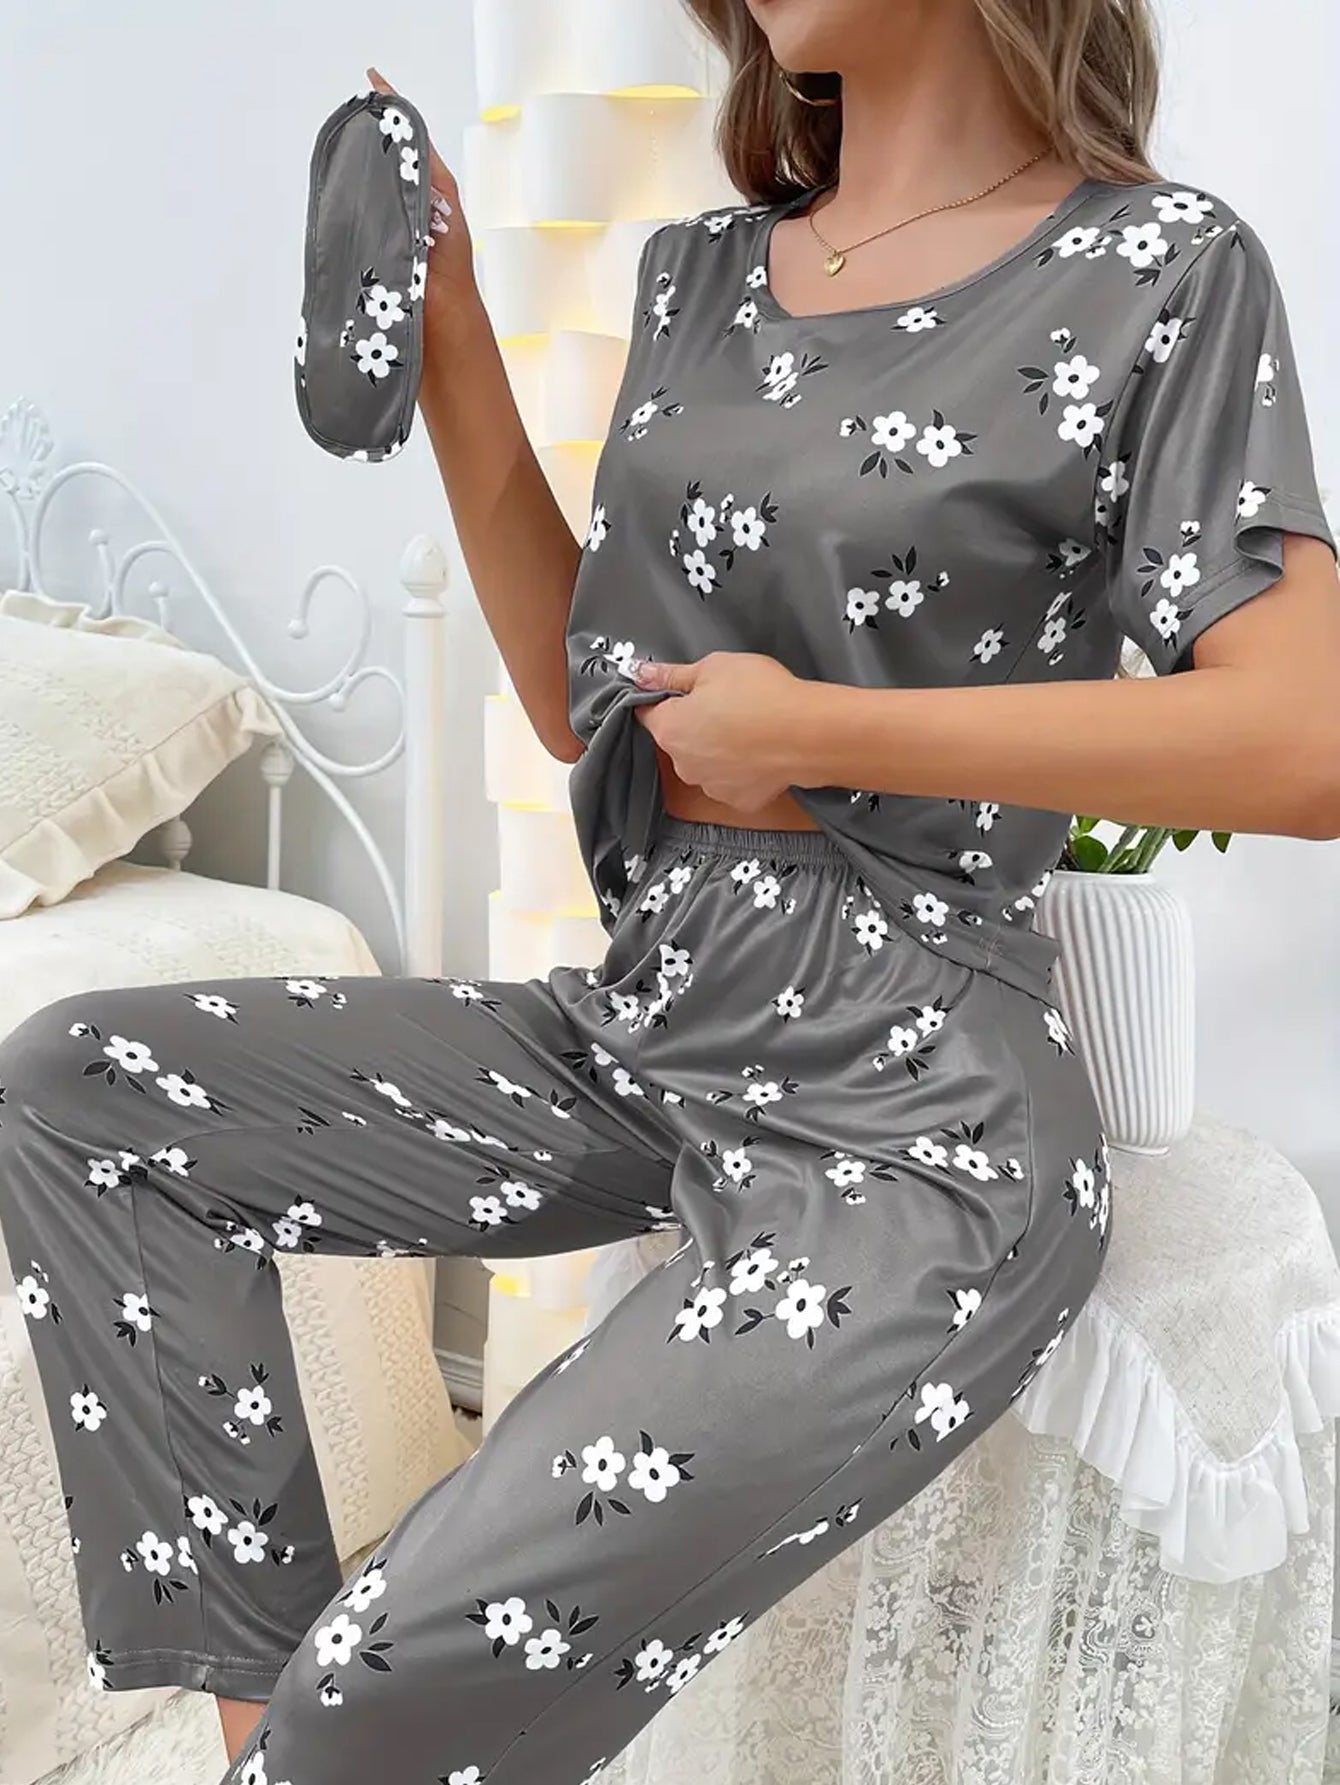 Floral Print Loose Pajama Set - Dark Gray